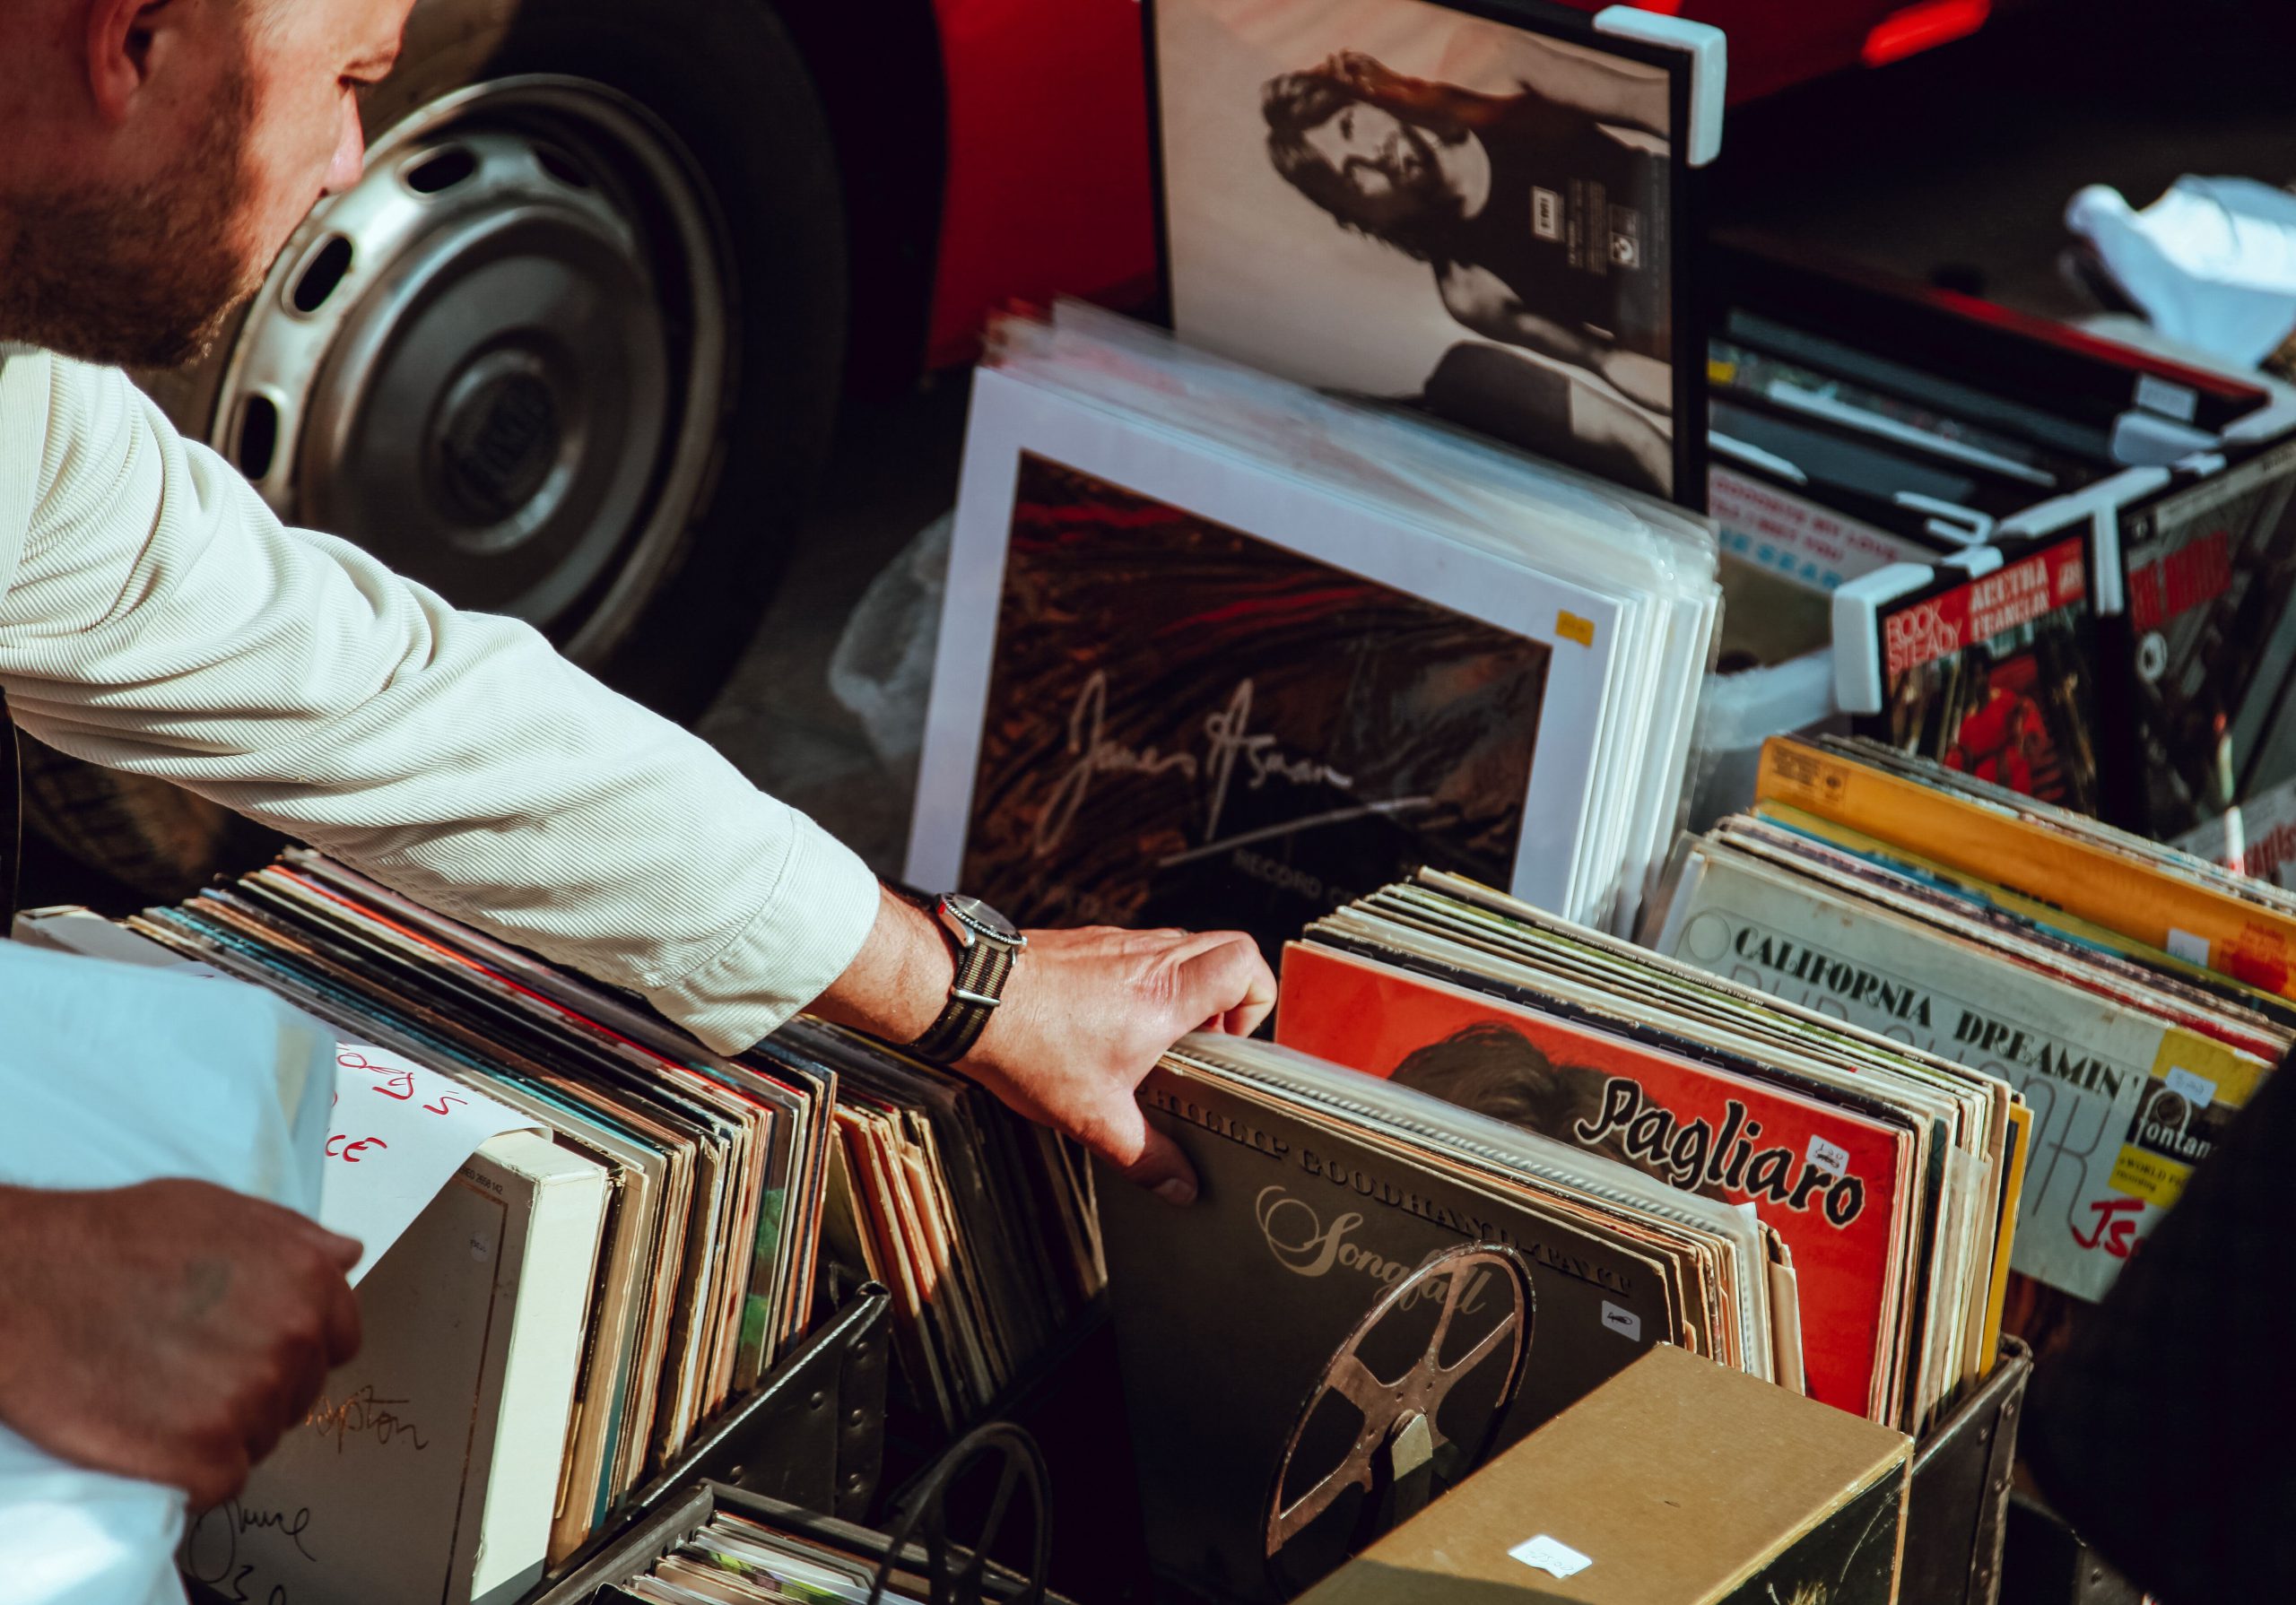 Hand sifting through records at record shop